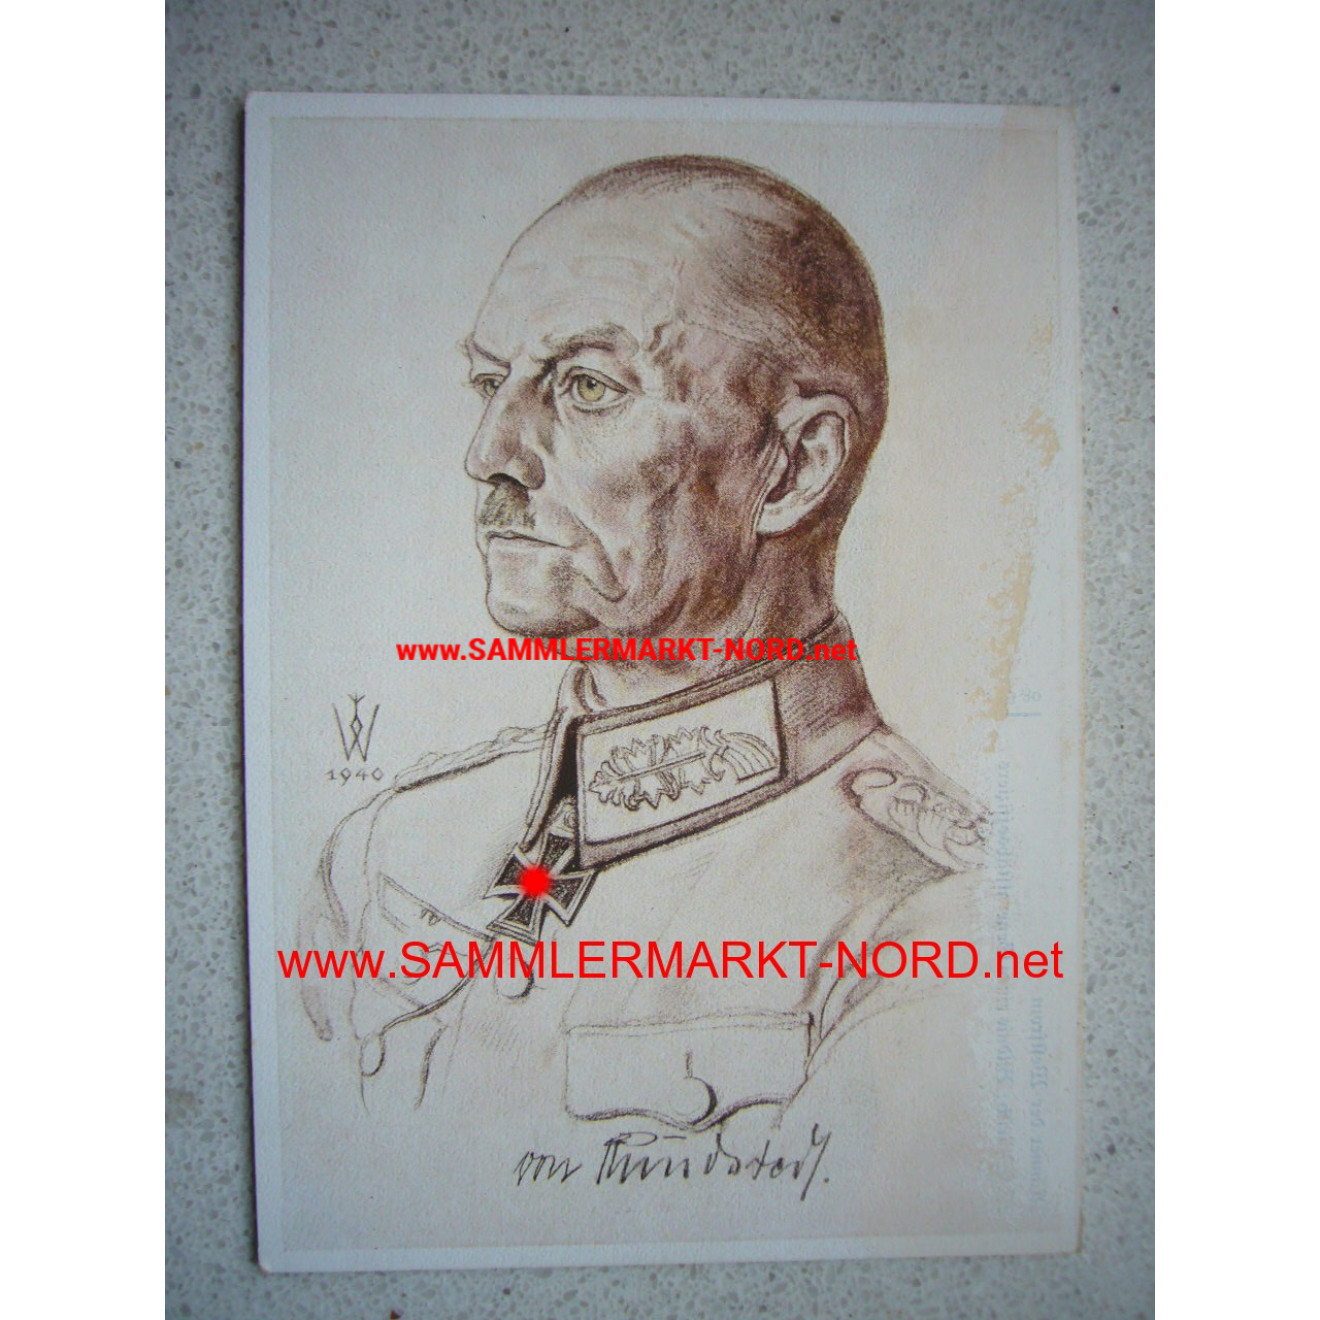 Generaloberst von Rundstedt - Willrich postcard